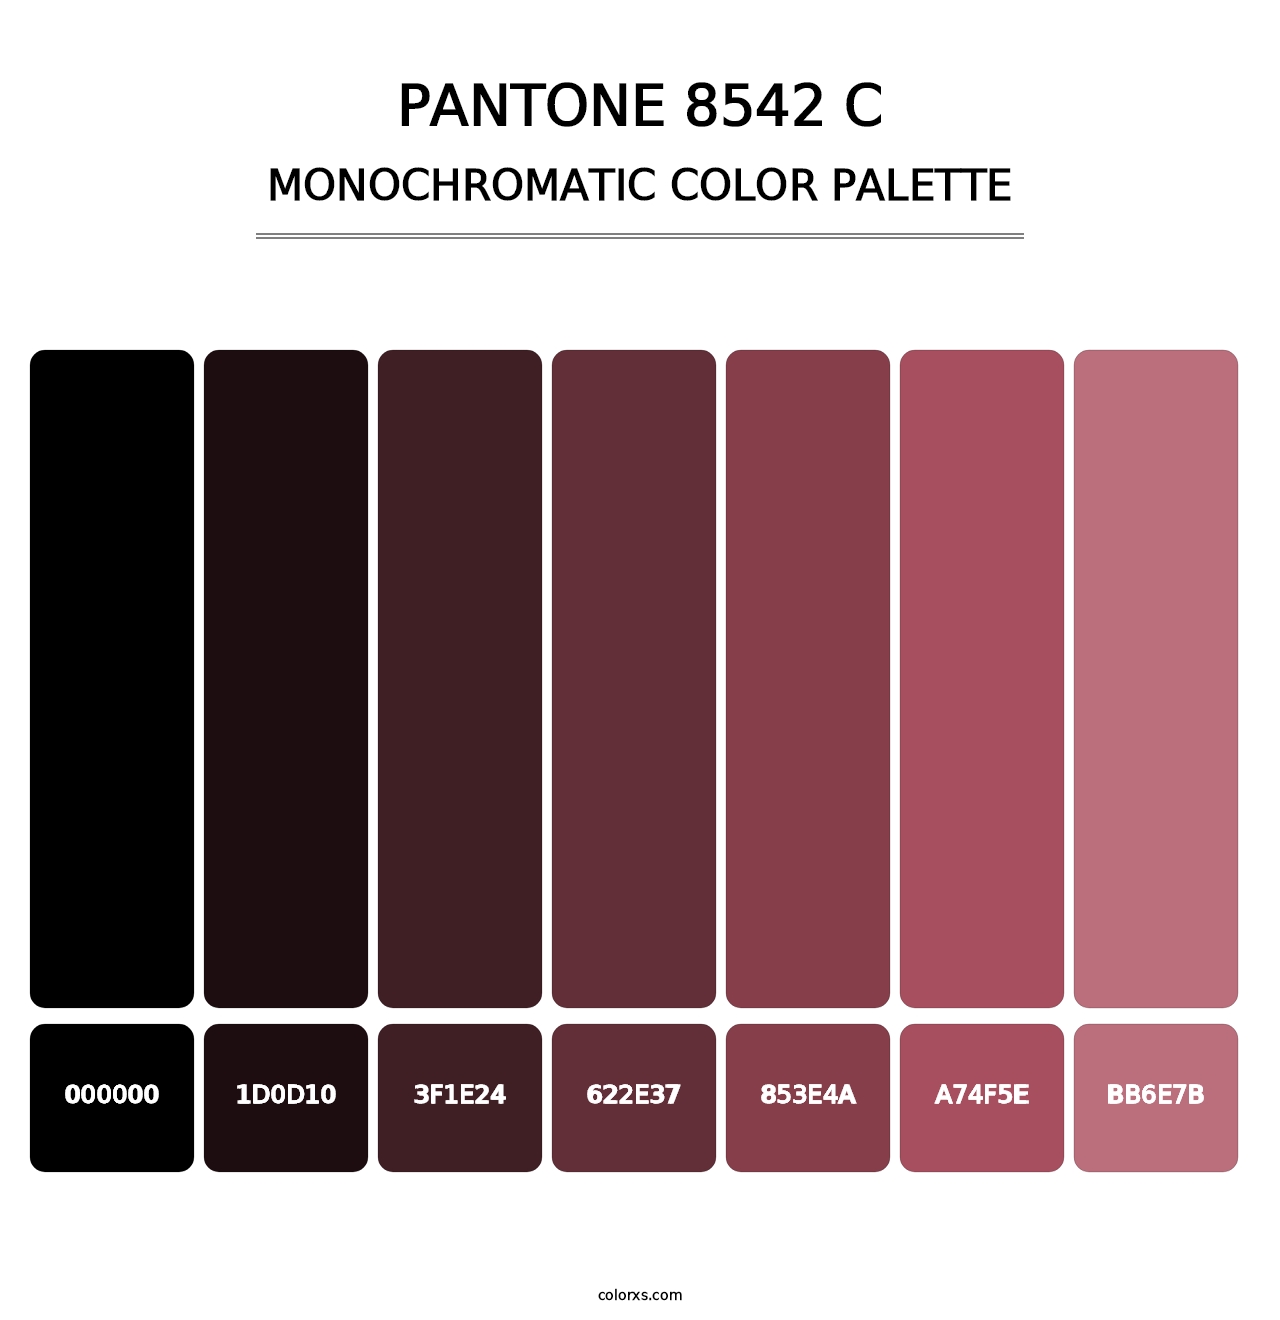 PANTONE 8542 C - Monochromatic Color Palette